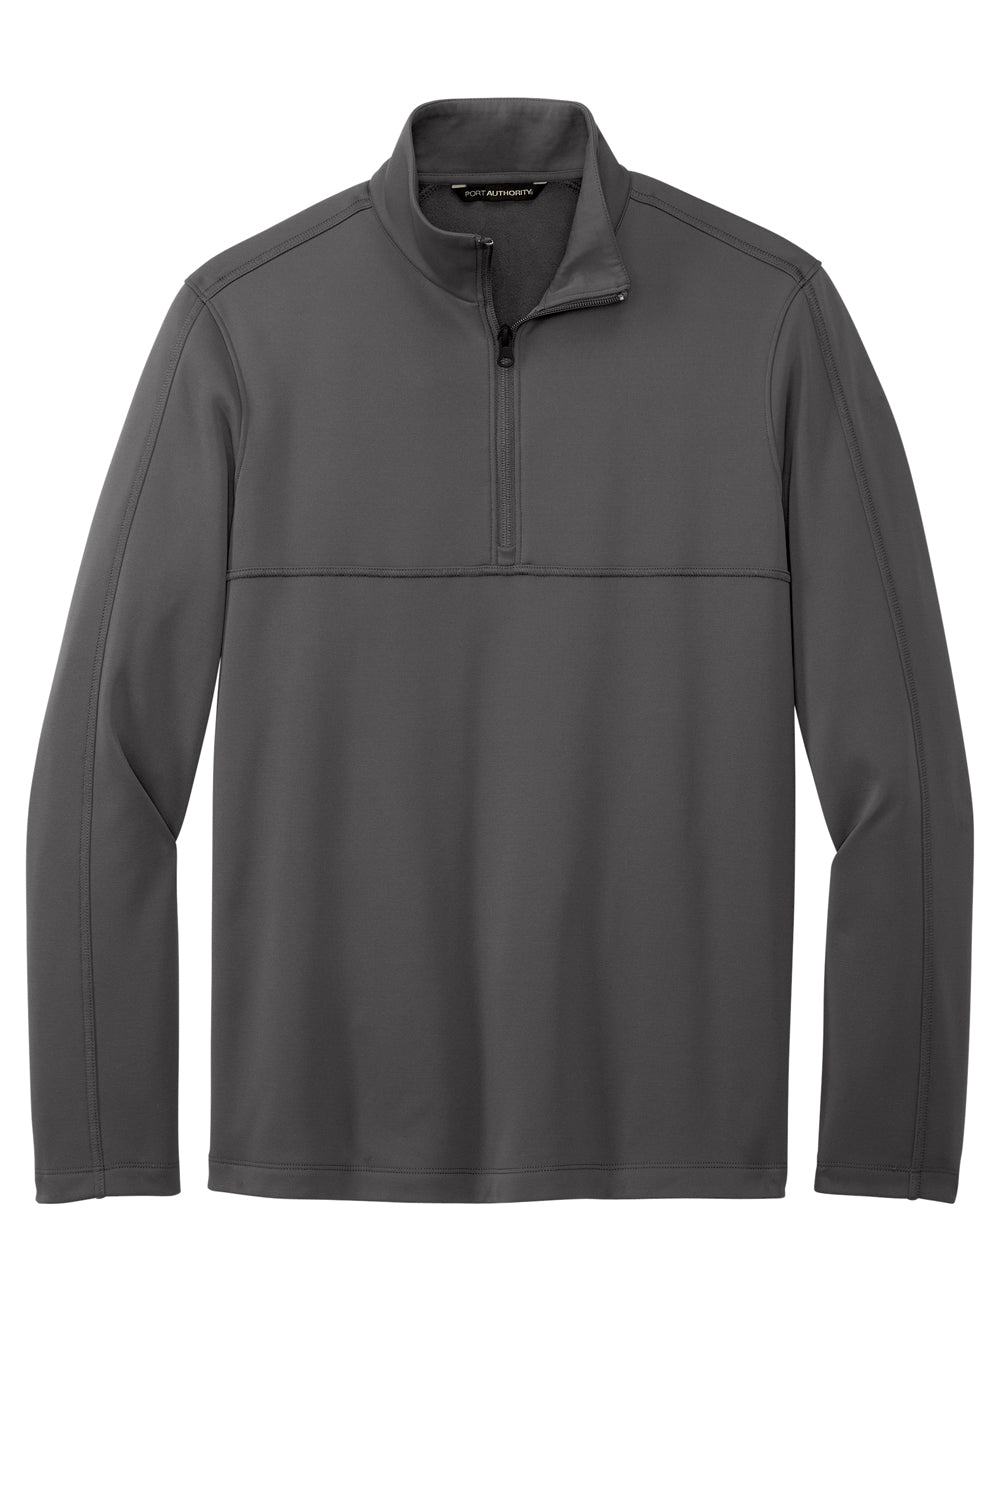 Port Authority F804 Mens Smooth Fleece 1/4 Zip Jacket Graphite Grey Flat Front